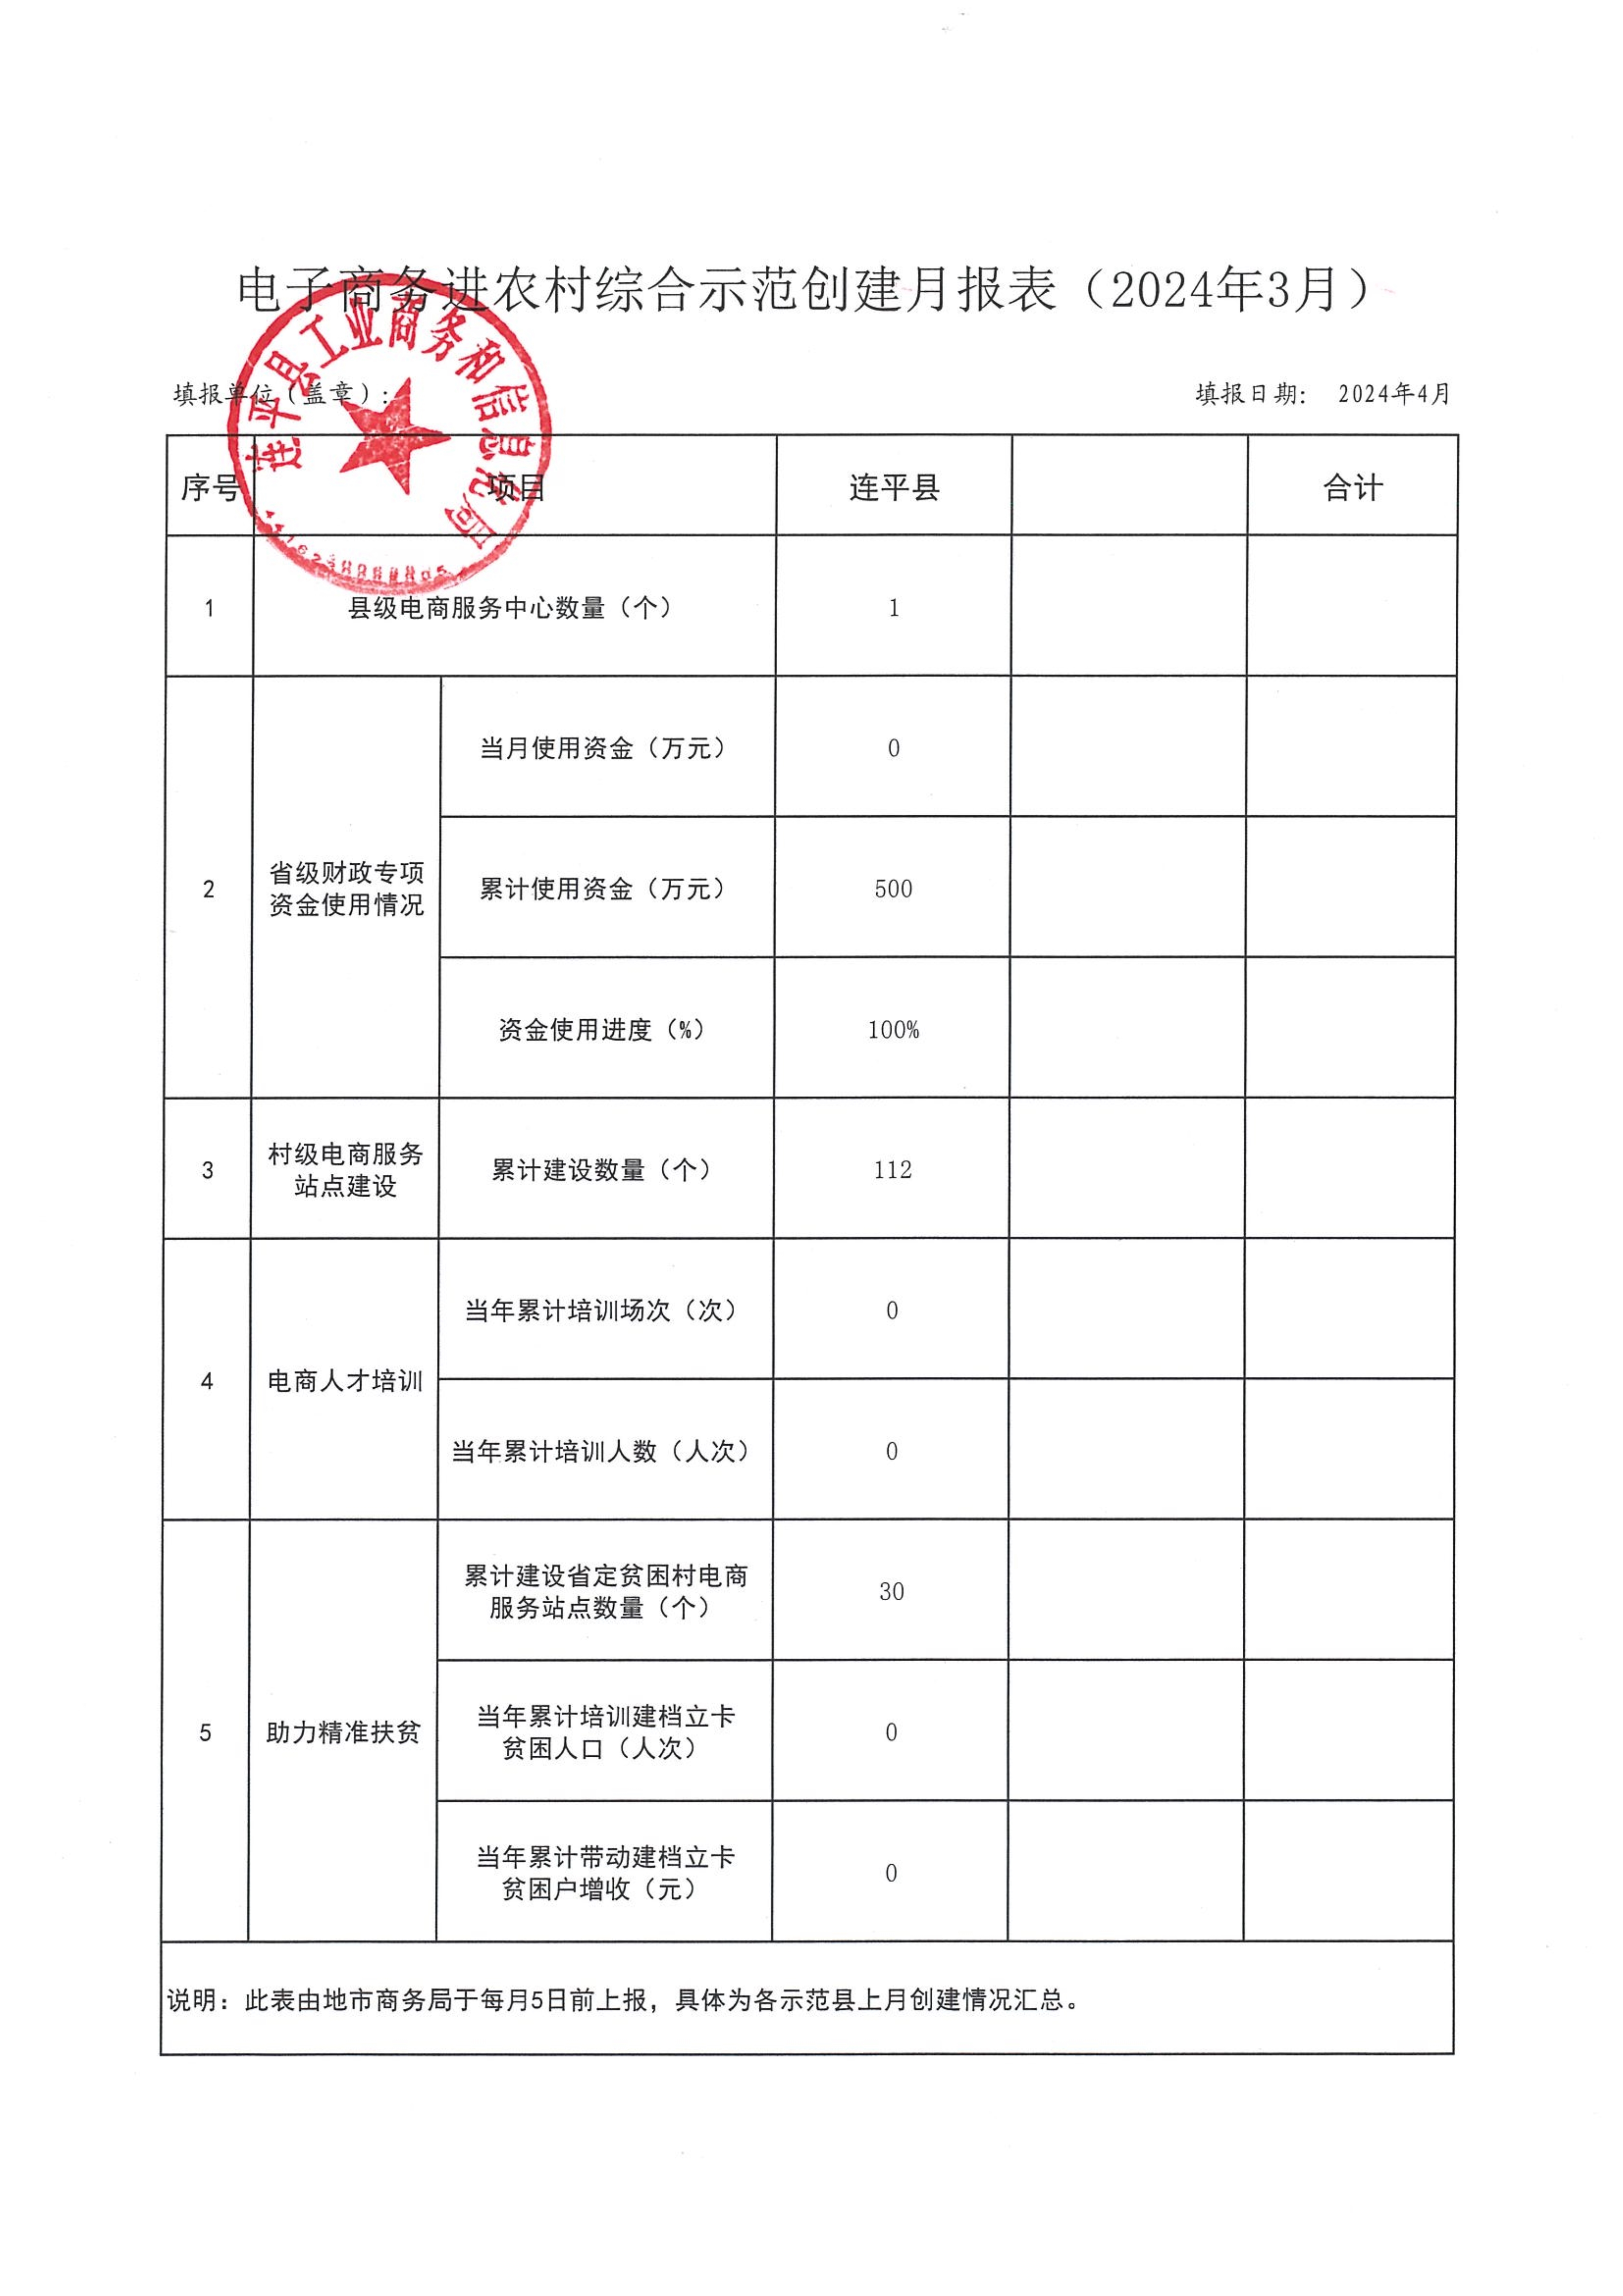 省级电子商务进农村综合示范工作报表（202403）_1.jpg